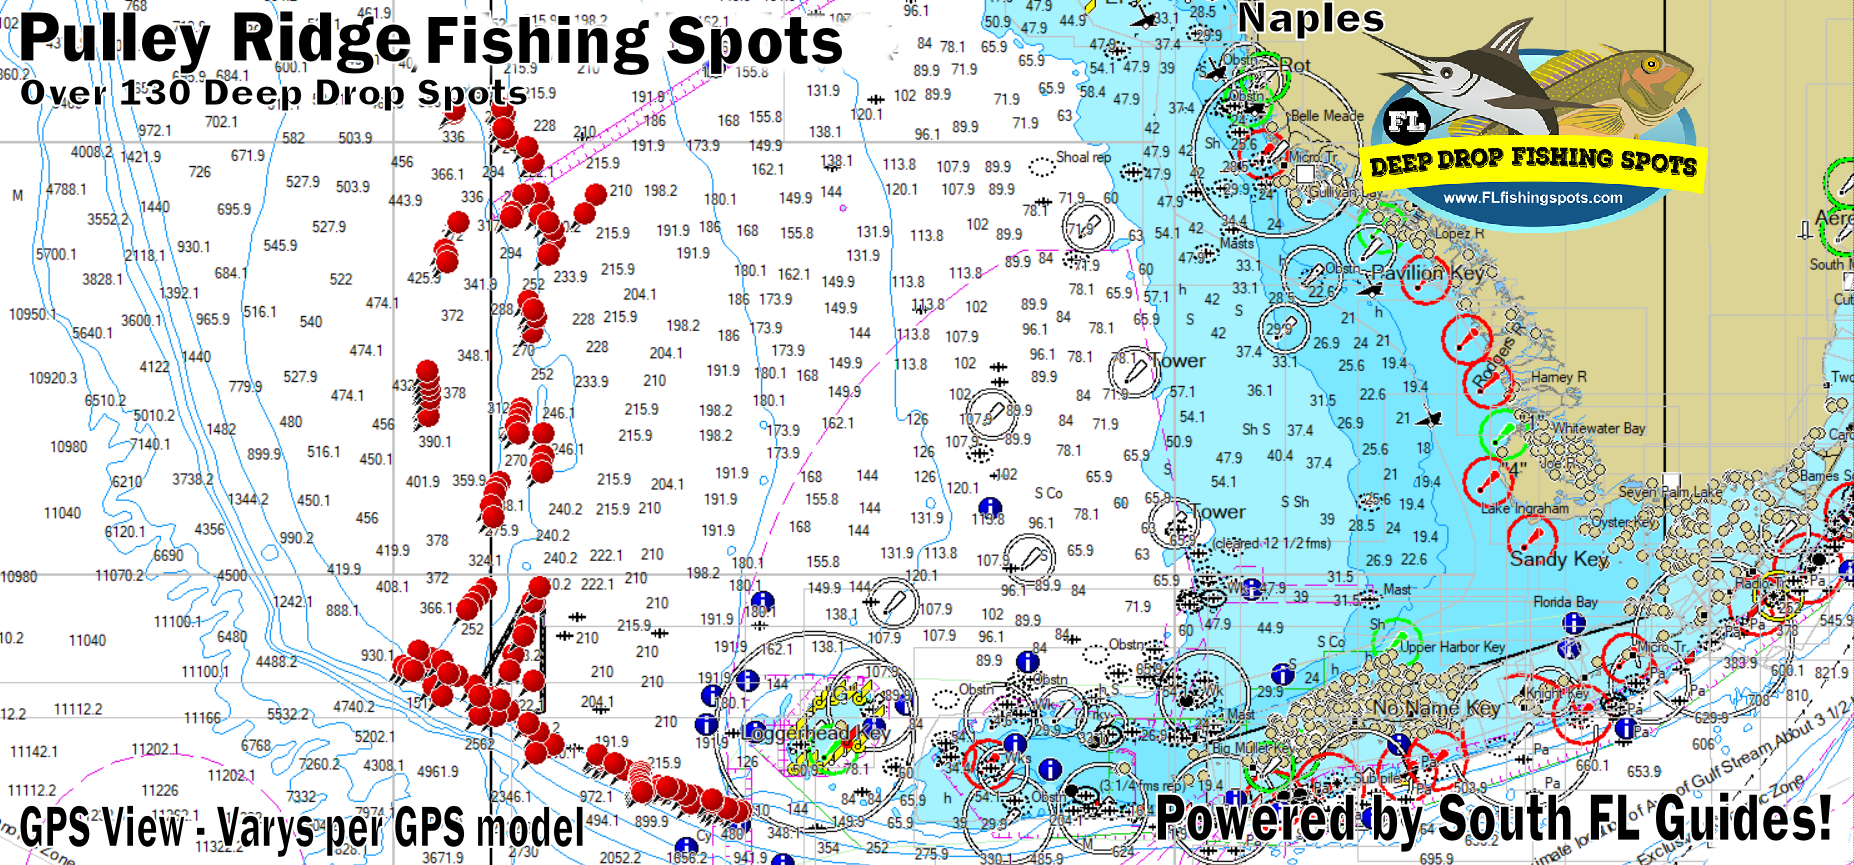 Pulley Ridge Fishing Spots Map - Florida Gulf